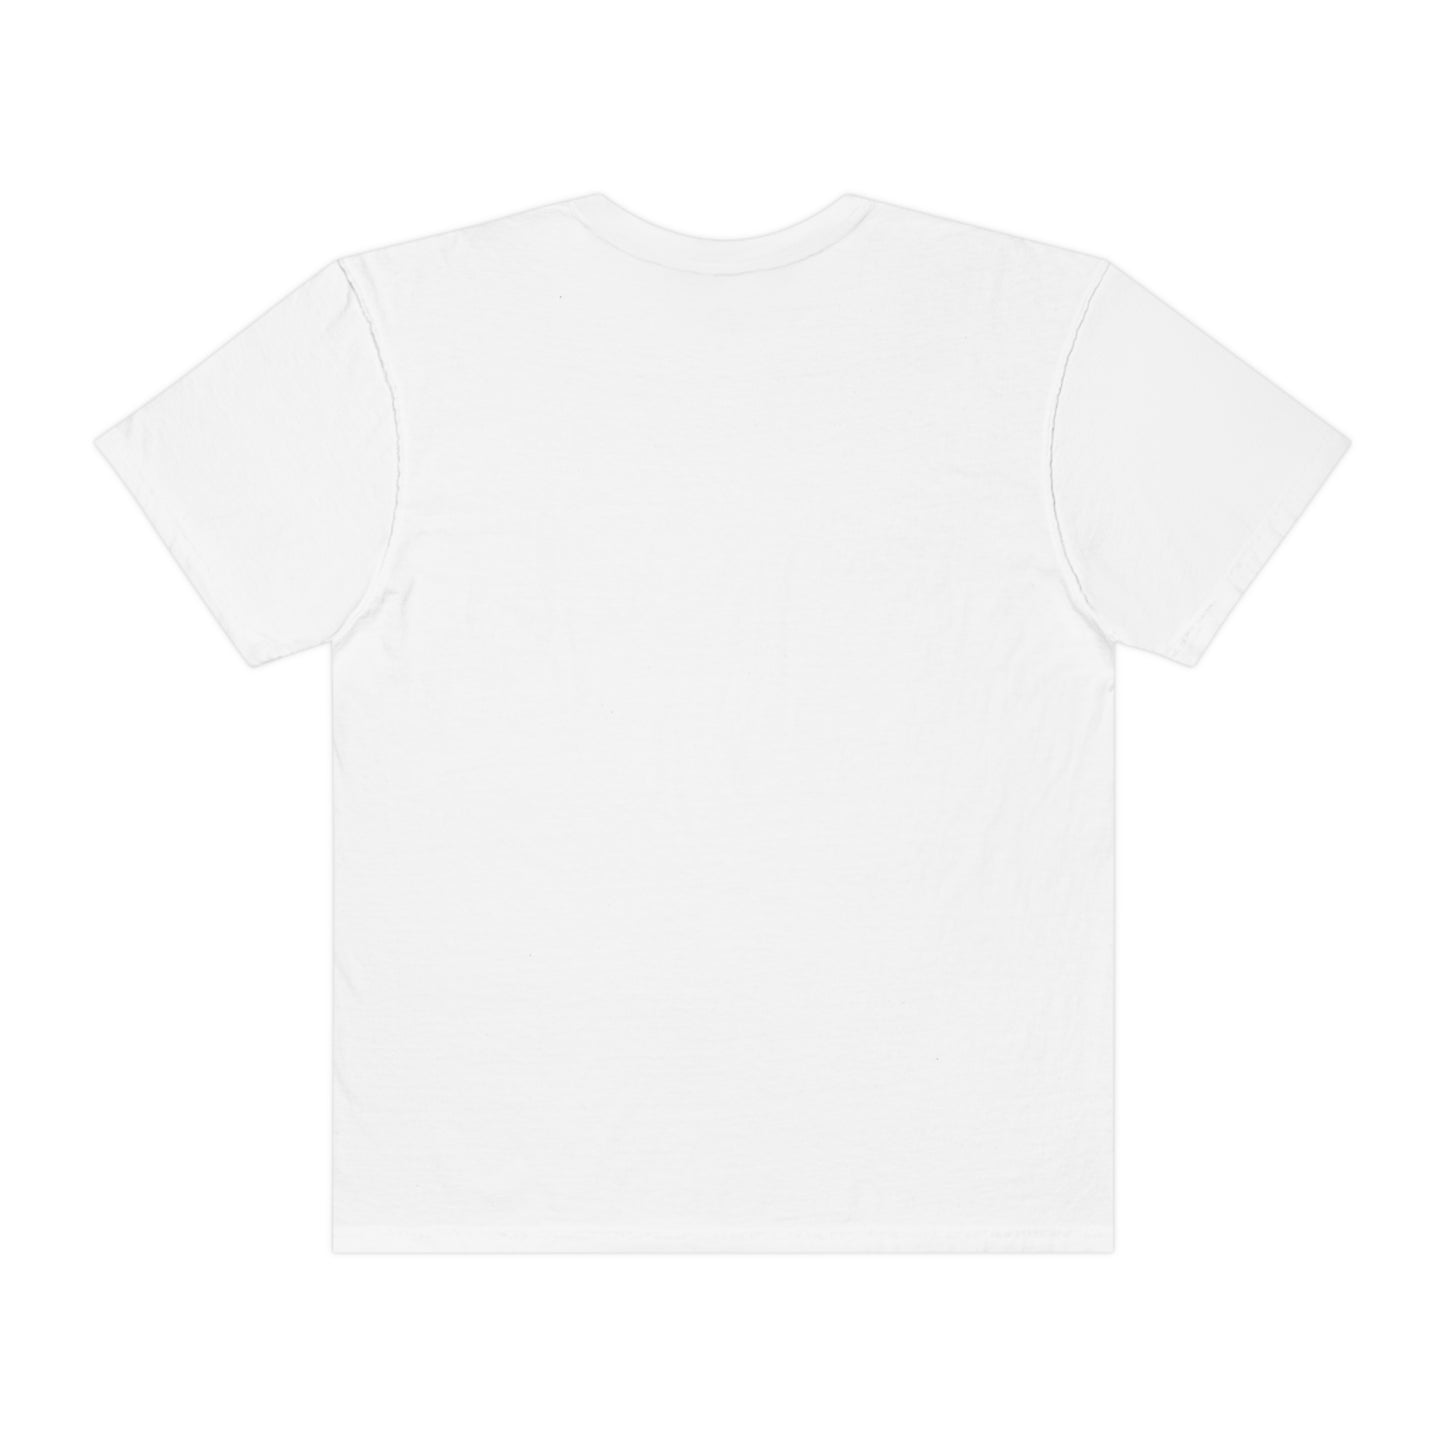 Boothe T-shirt